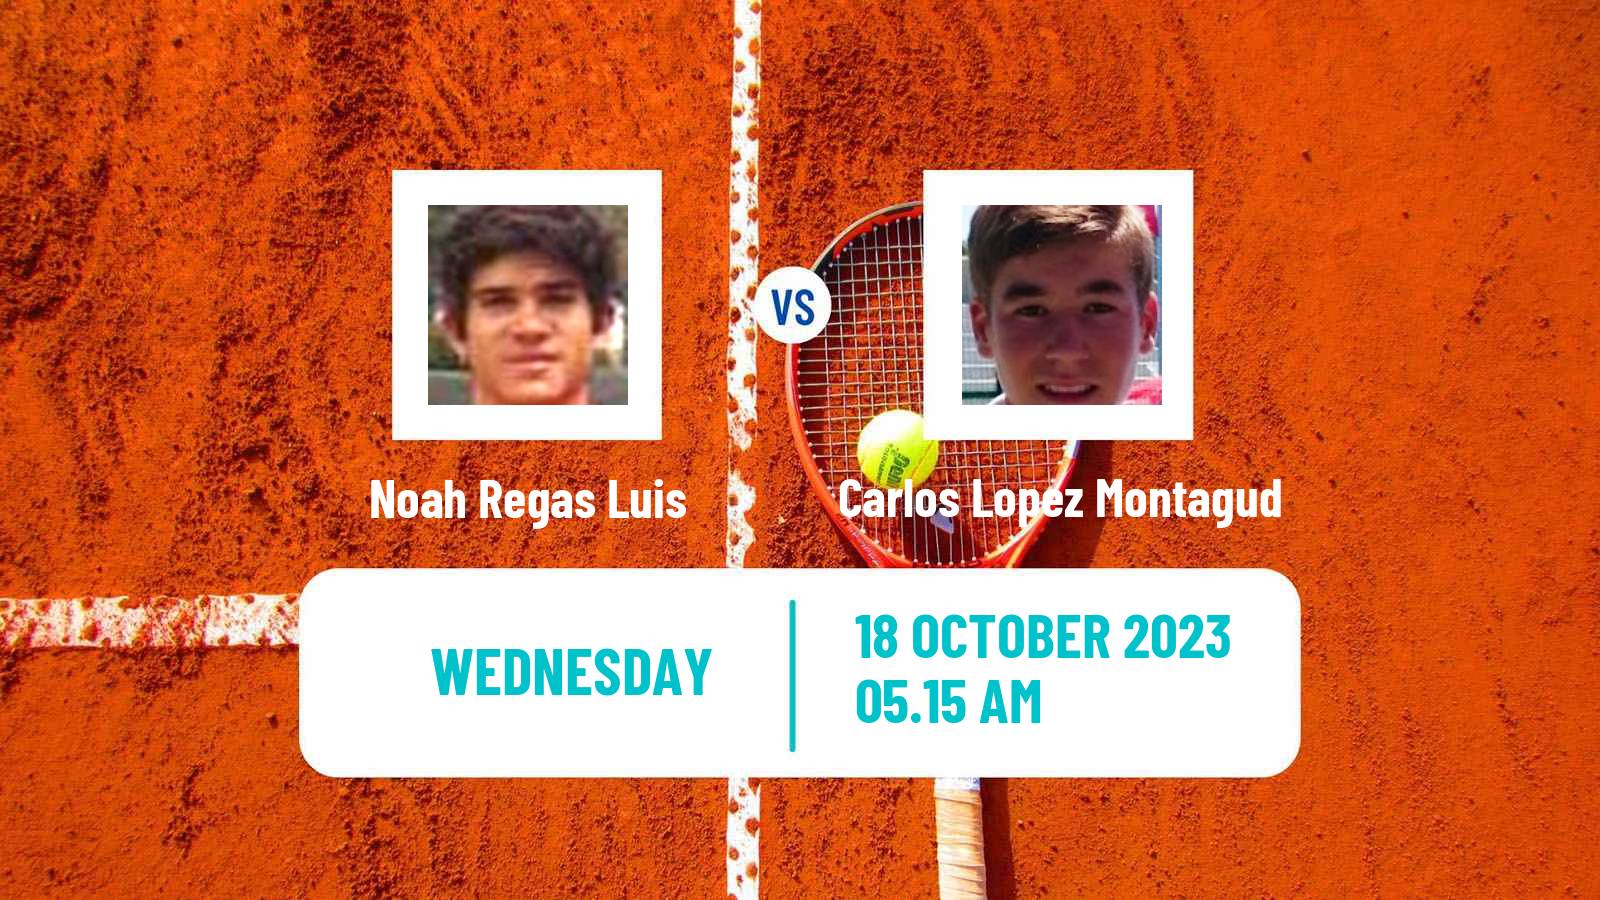 Tennis ITF M15 Castellon Men Noah Regas Luis - Carlos Lopez Montagud